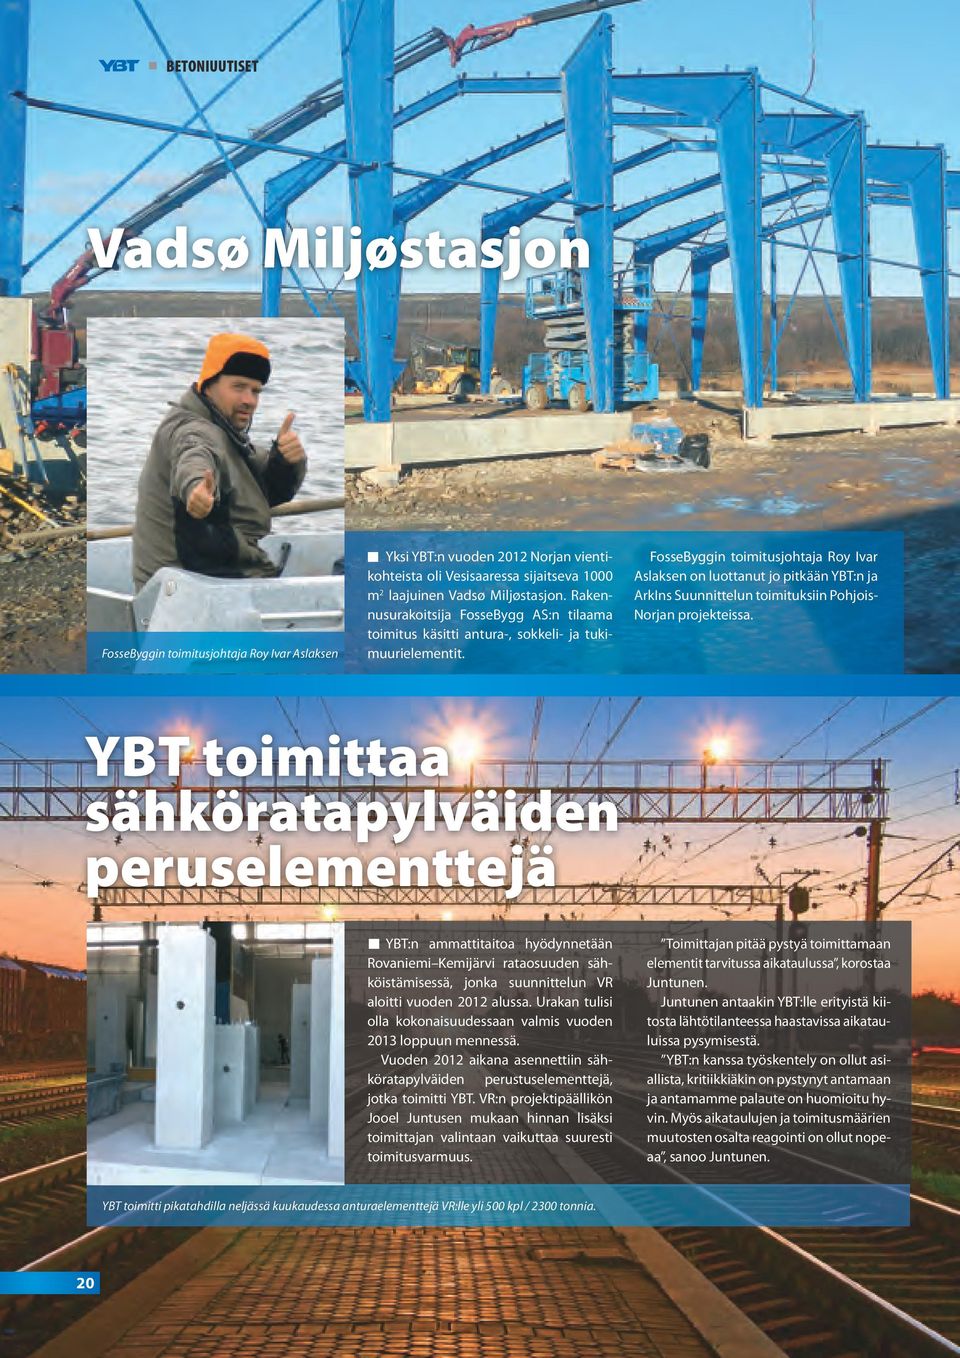 FosseByggin toimitusjohtaja Roy Ivar Aslaksen on luottanut jo pitkään YBT:n ja ArkIns Suunnittelun toimituksiin Pohjois- Norjan projekteissa.